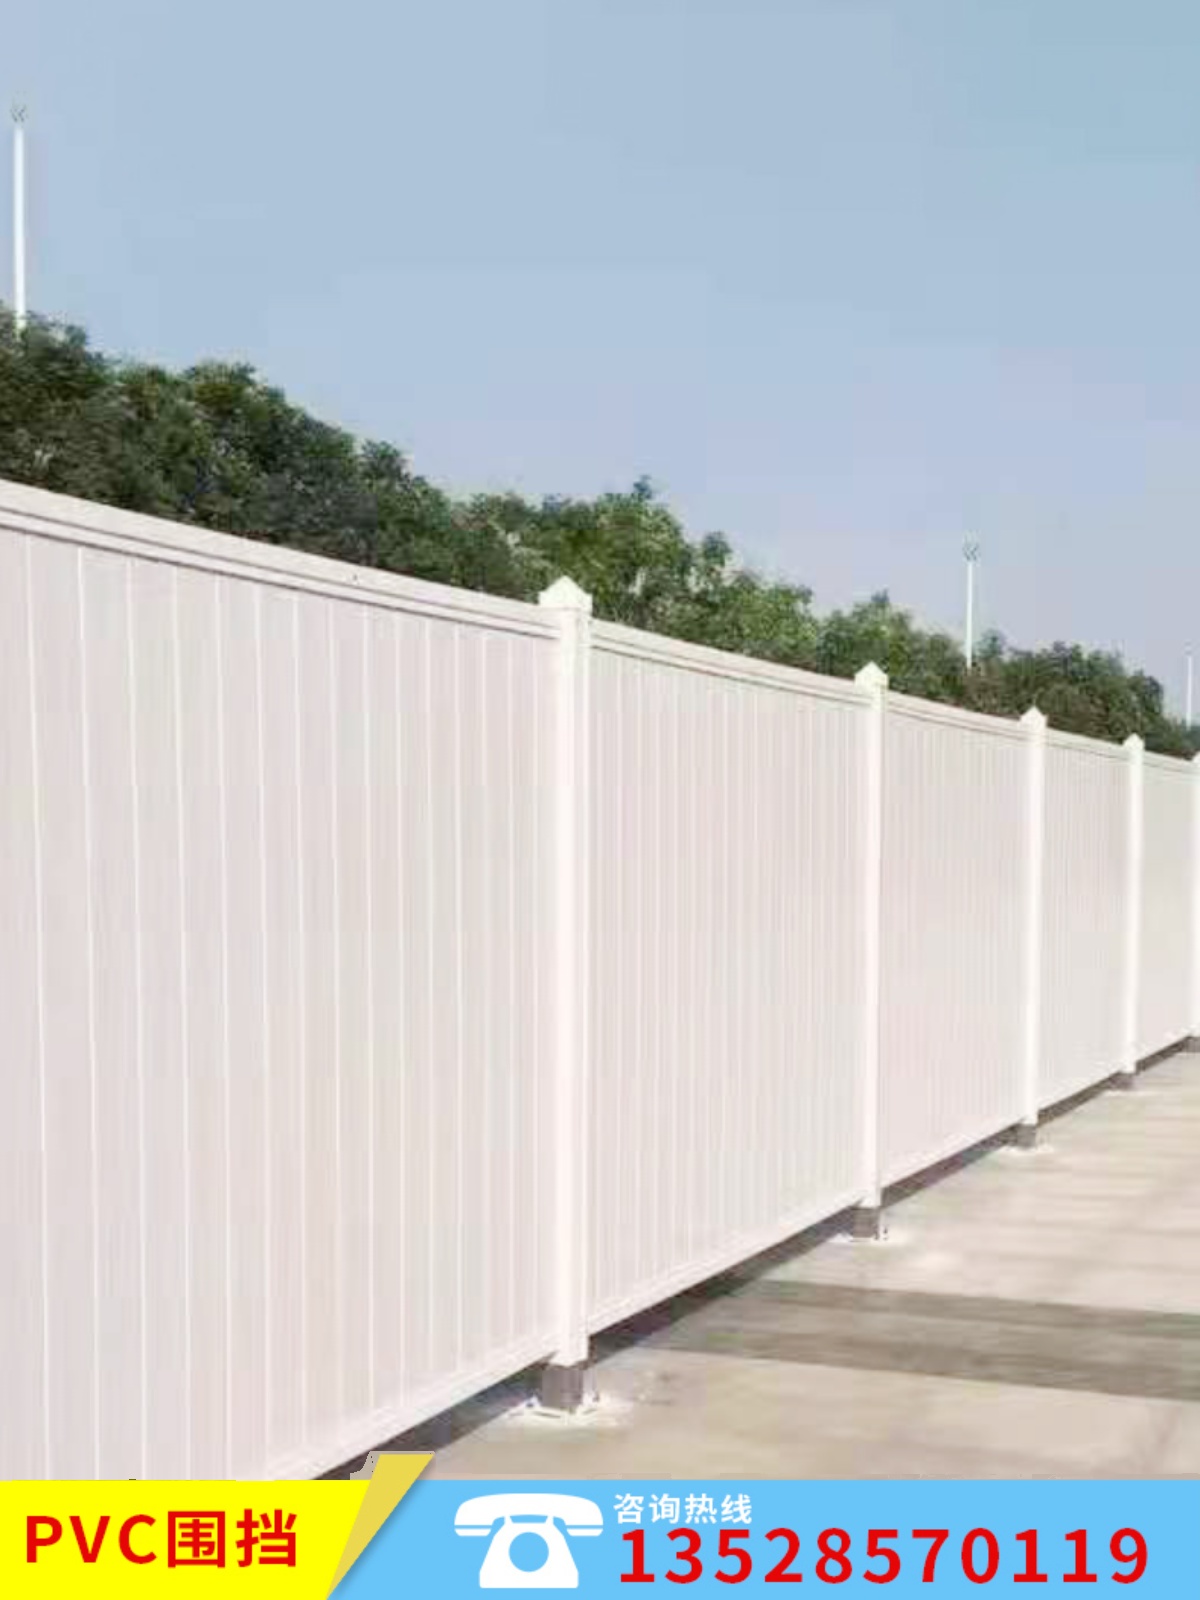 品PVC围挡挡板铁皮围栏护栏围墙 建筑工地市政地铁工程彩钢隔离促